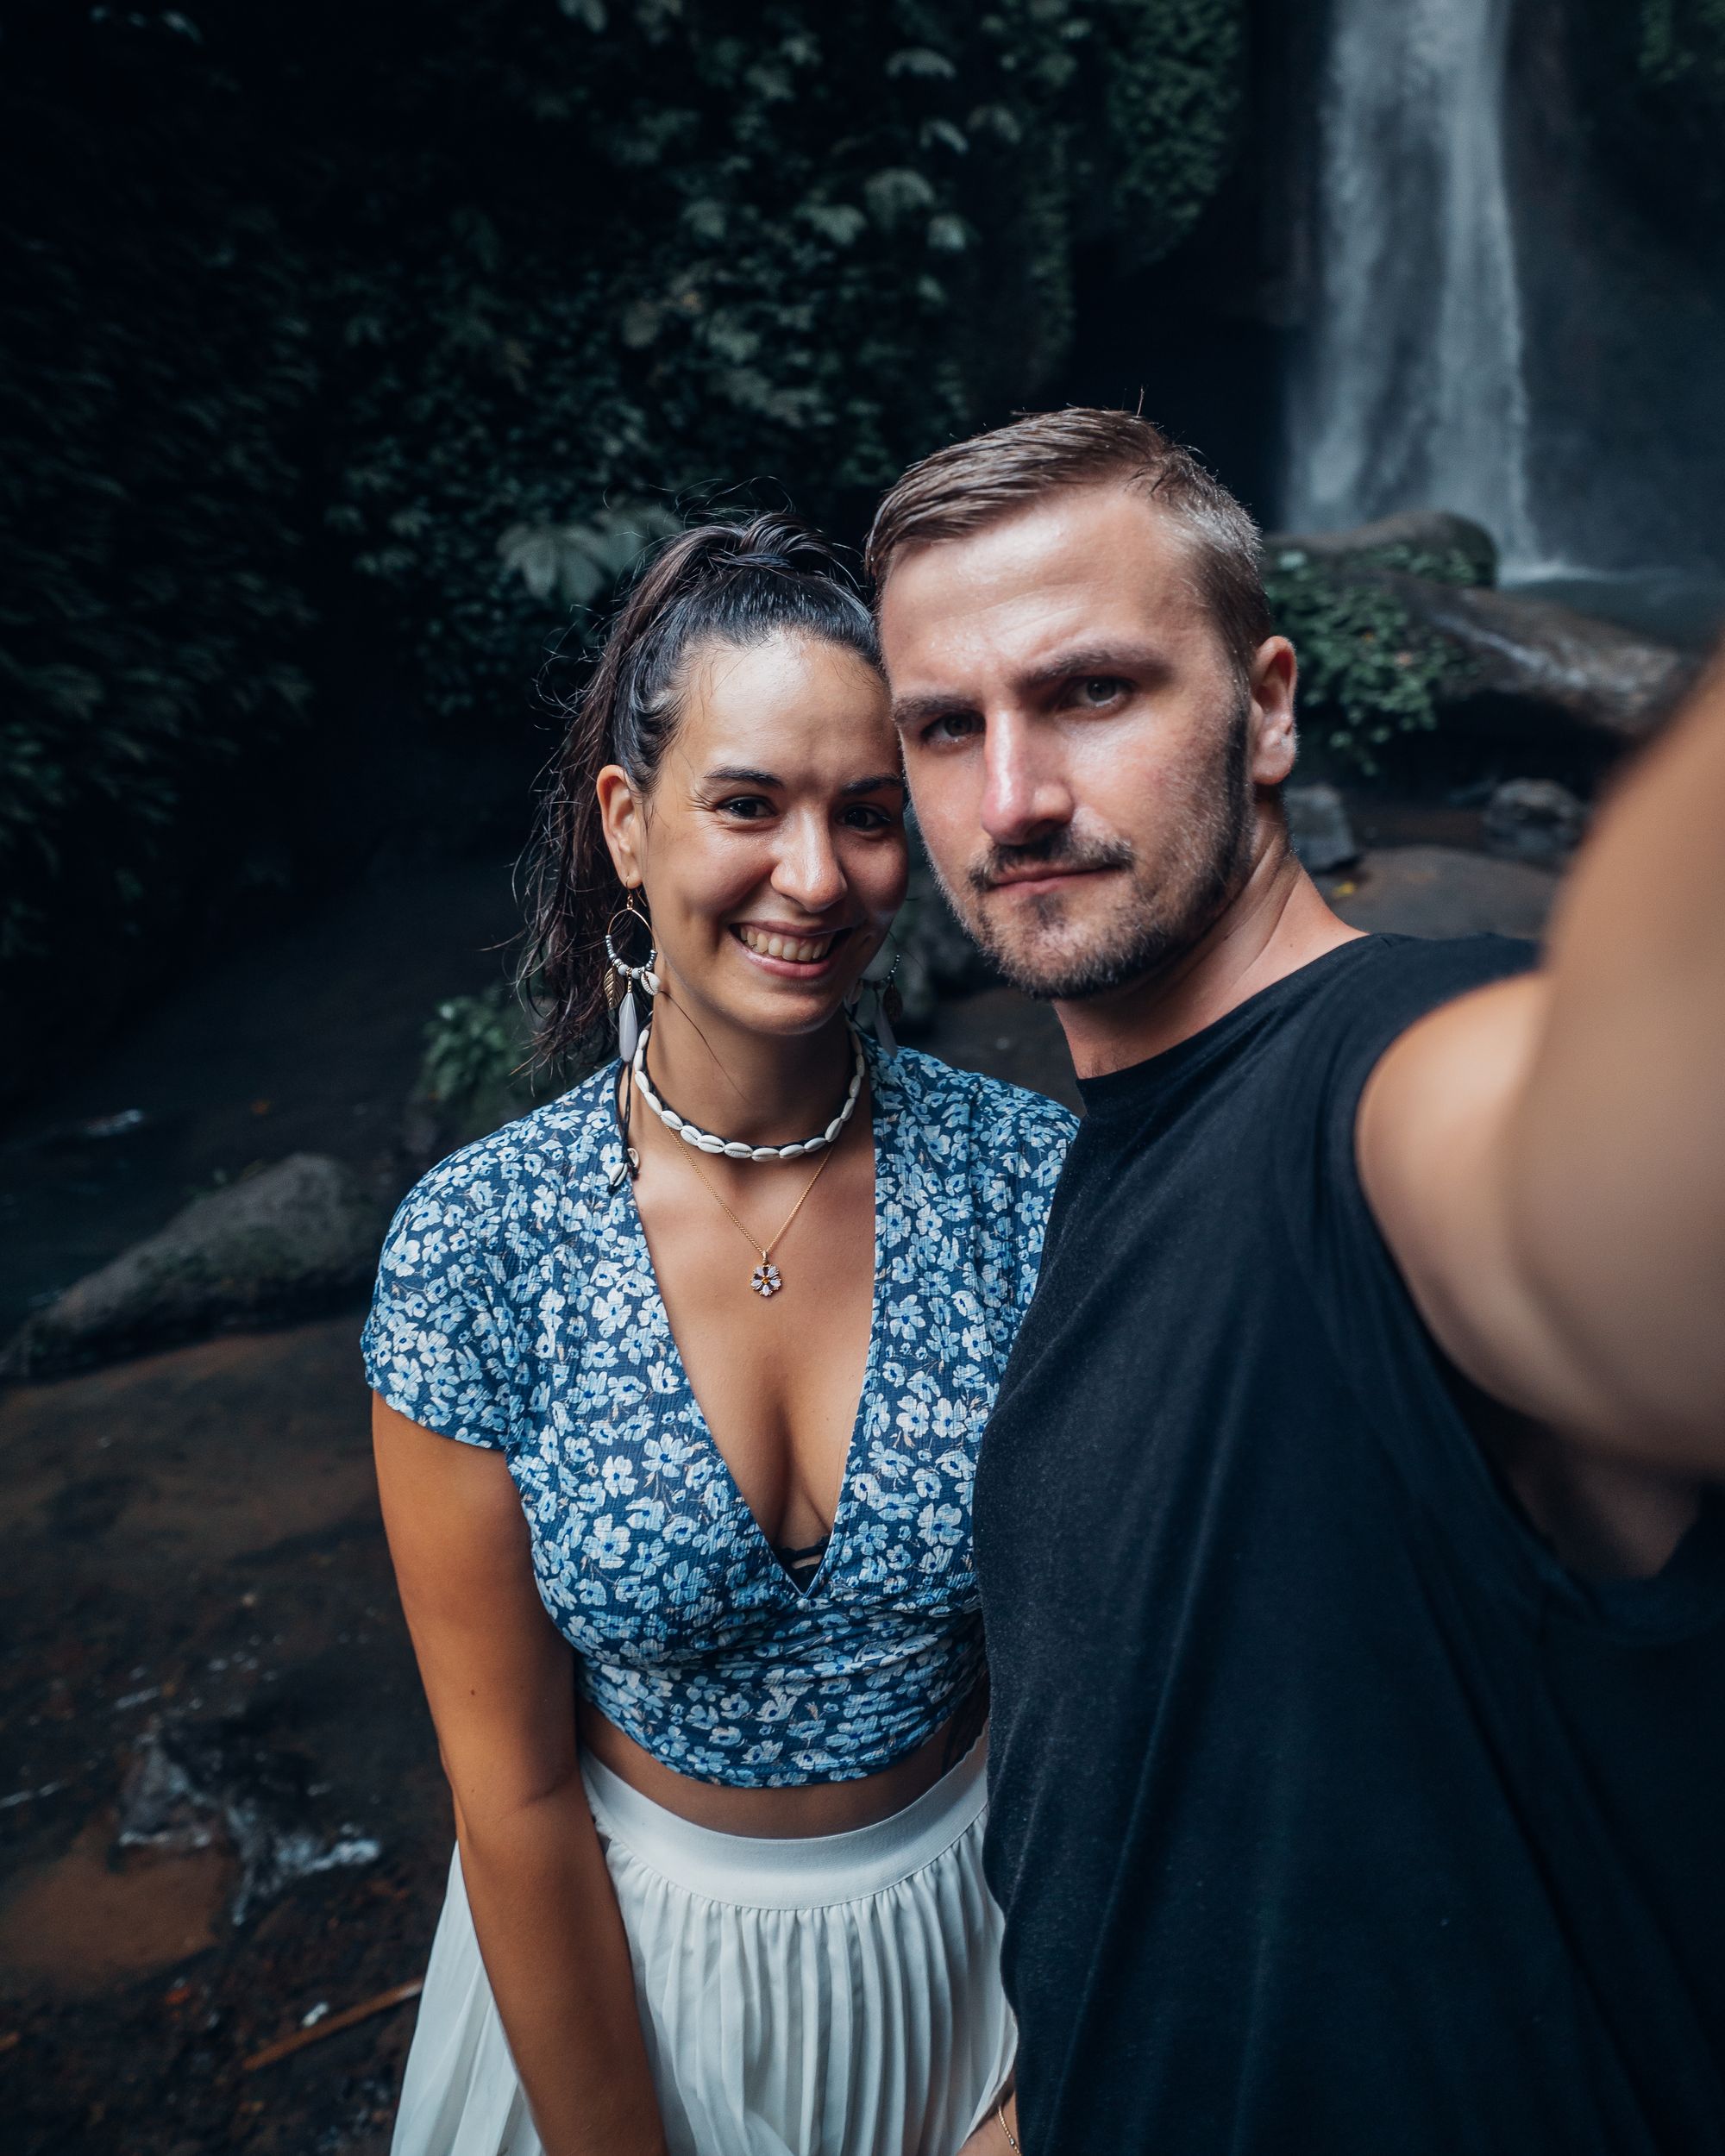 Der majestätische Leke Leke Wasserfall auf Bali: Ein Paradies für Naturliebhaber